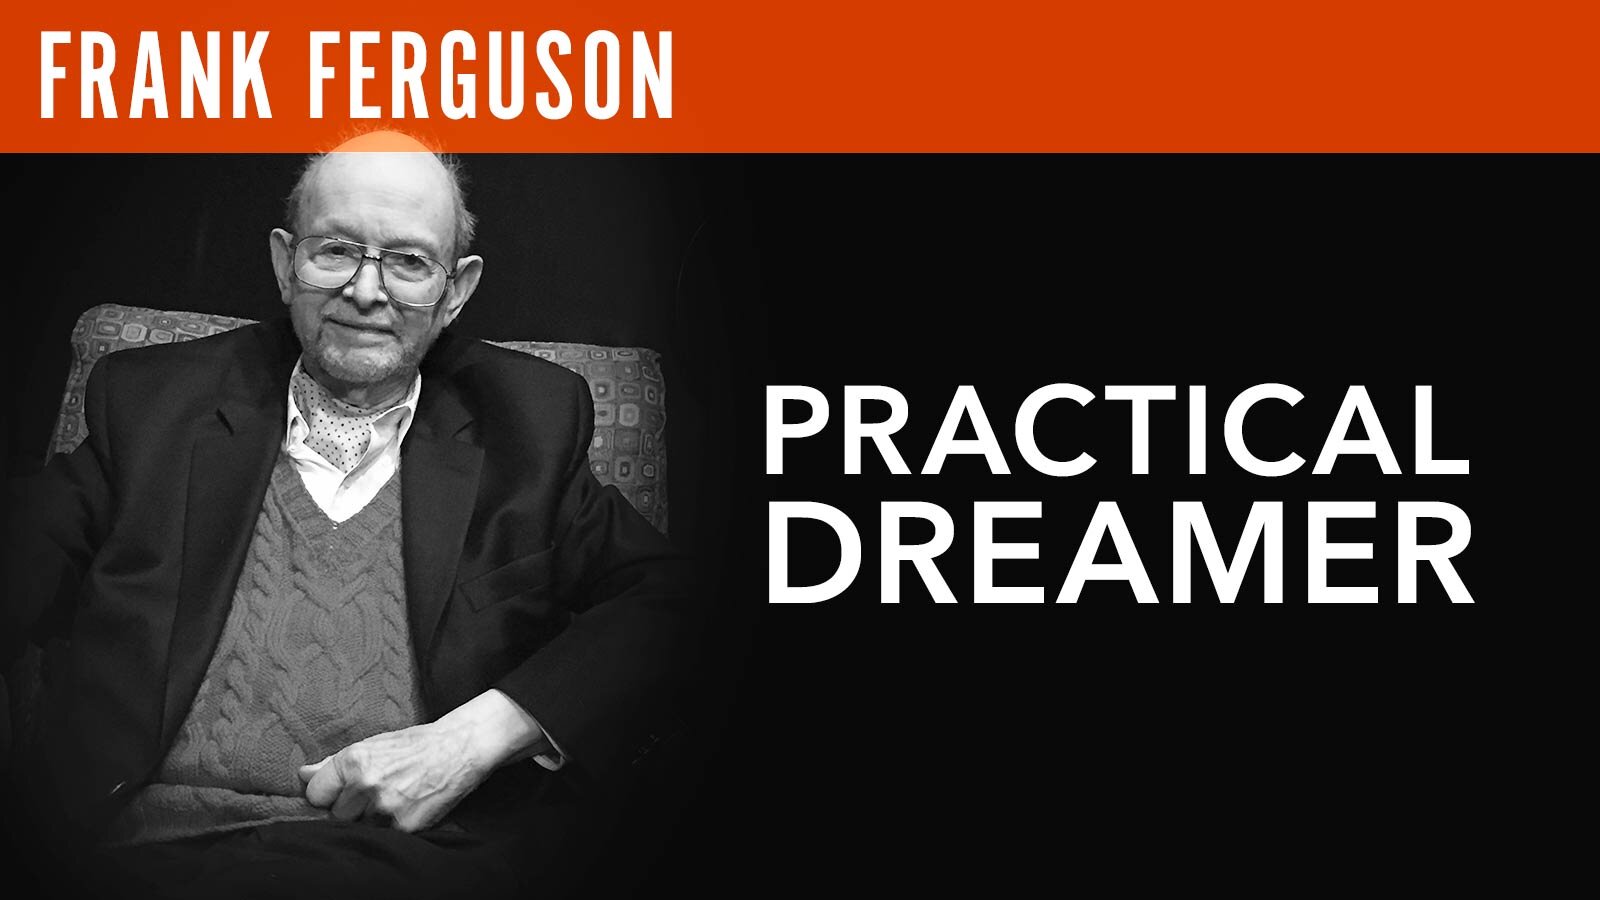 Frank Ferguson, "Practical Dreamer"